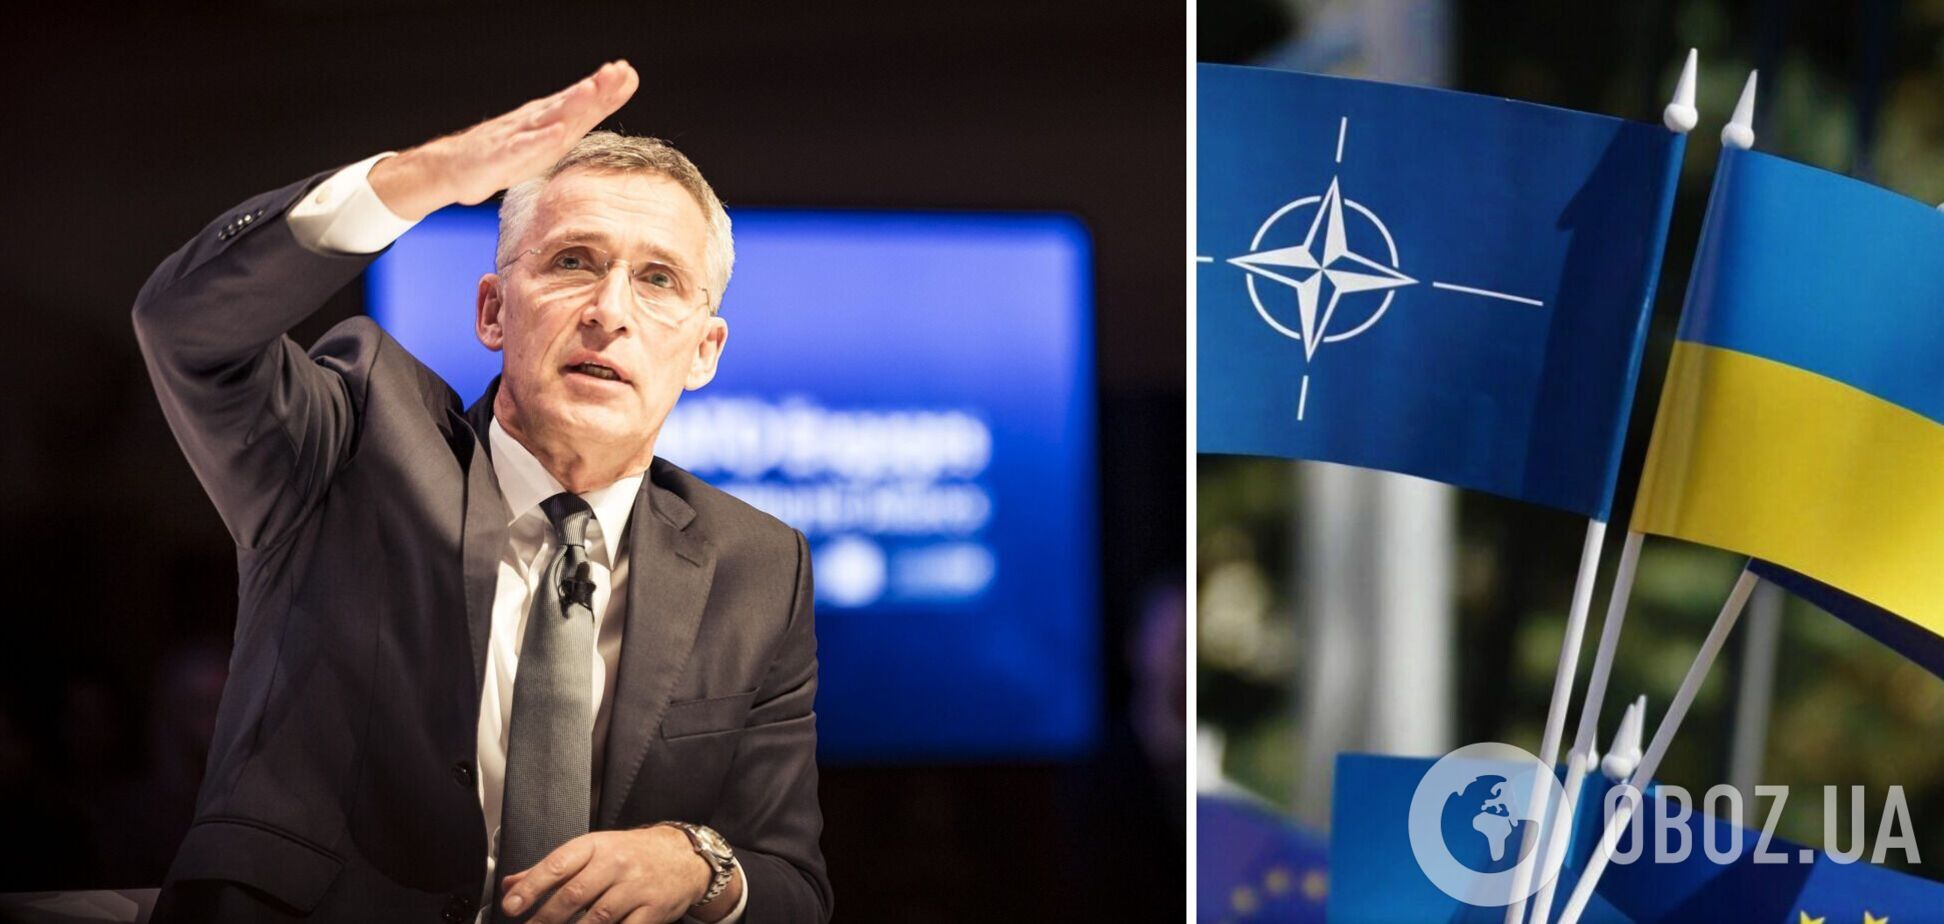 Столтенберг: все страны НАТО согласны с тем, что Украина должна стать членом Альянса